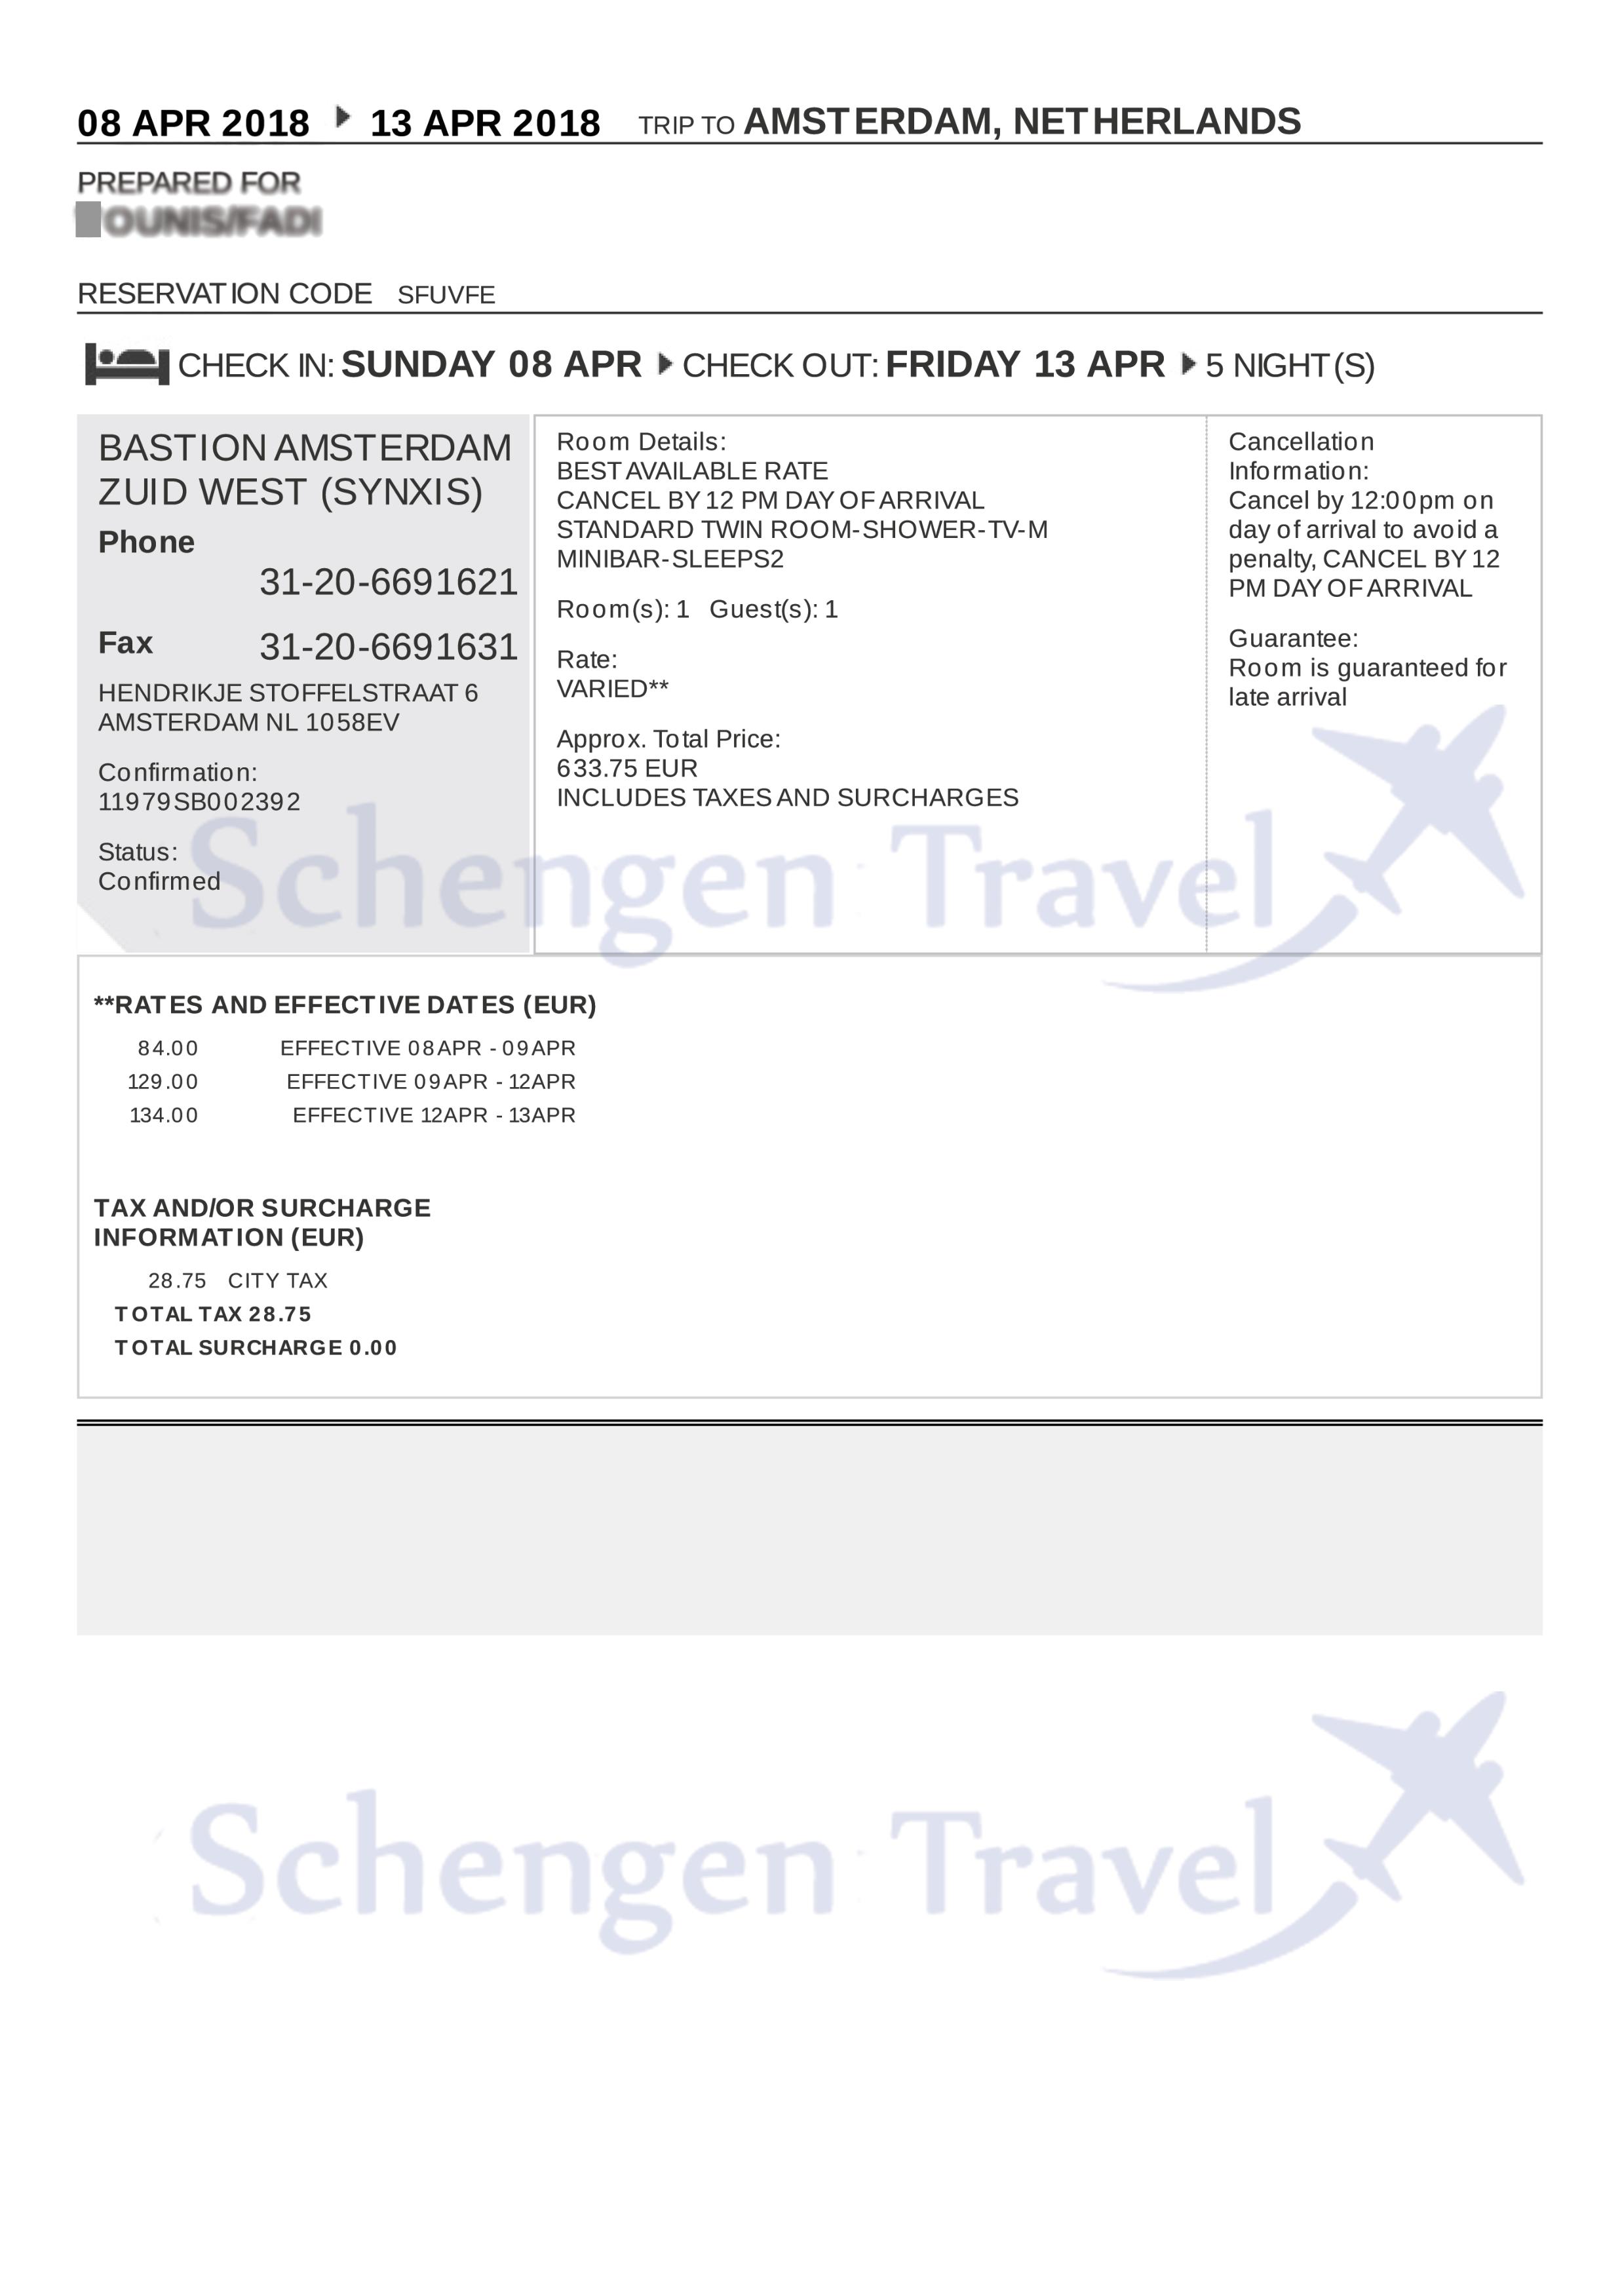 Sample Flight Reservation or Flight Itinerary for Visa Application